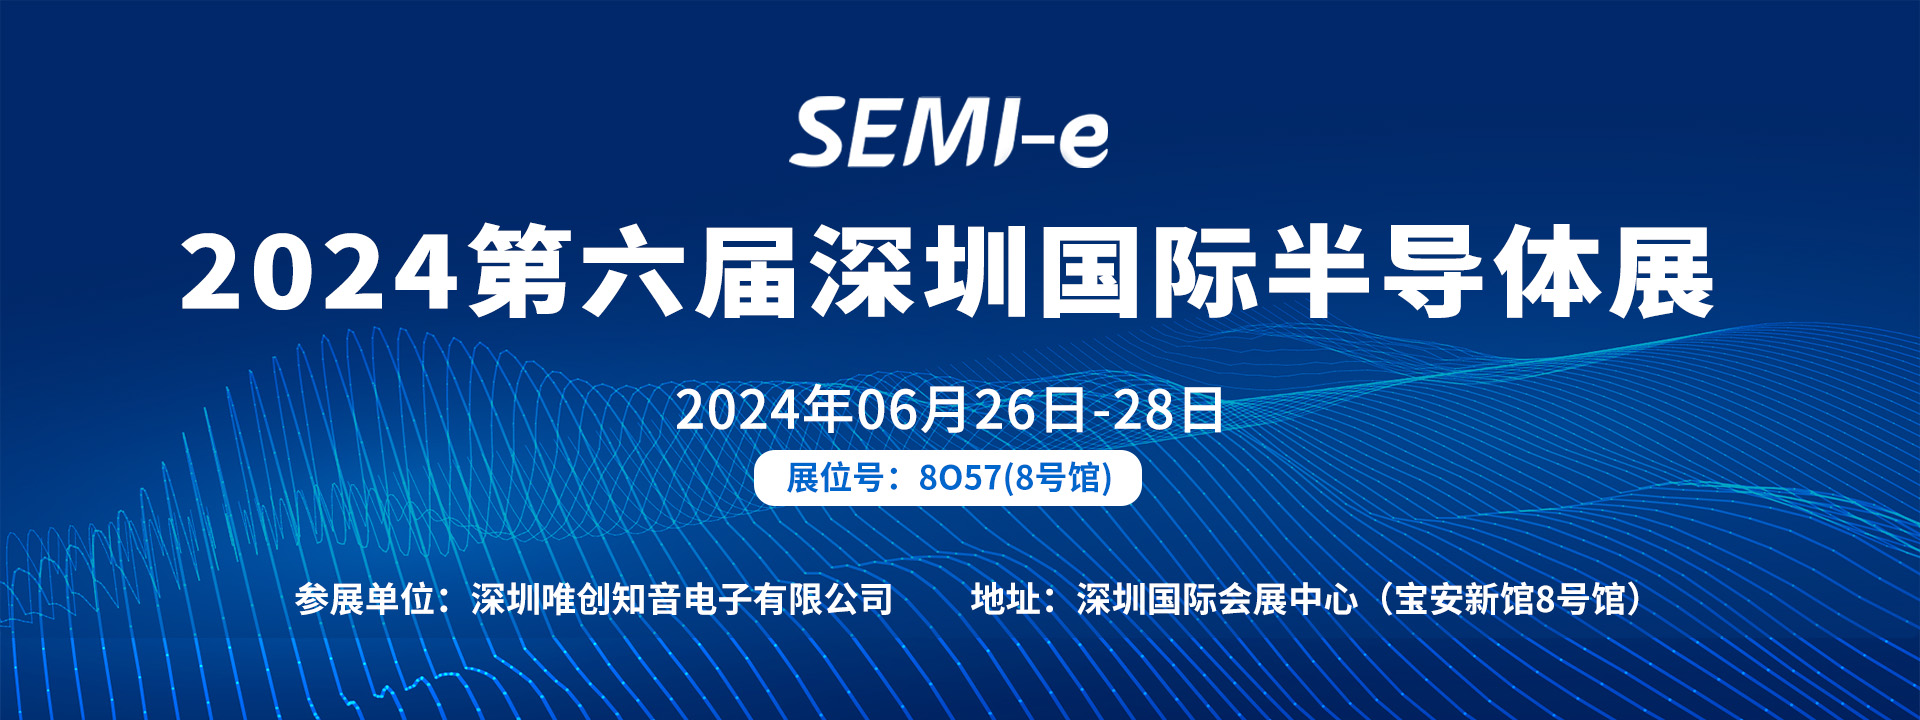 【SEMI-e 国际半导体深圳展】| 06月26-28日唯创知音语音芯片供应商 邀您来观展